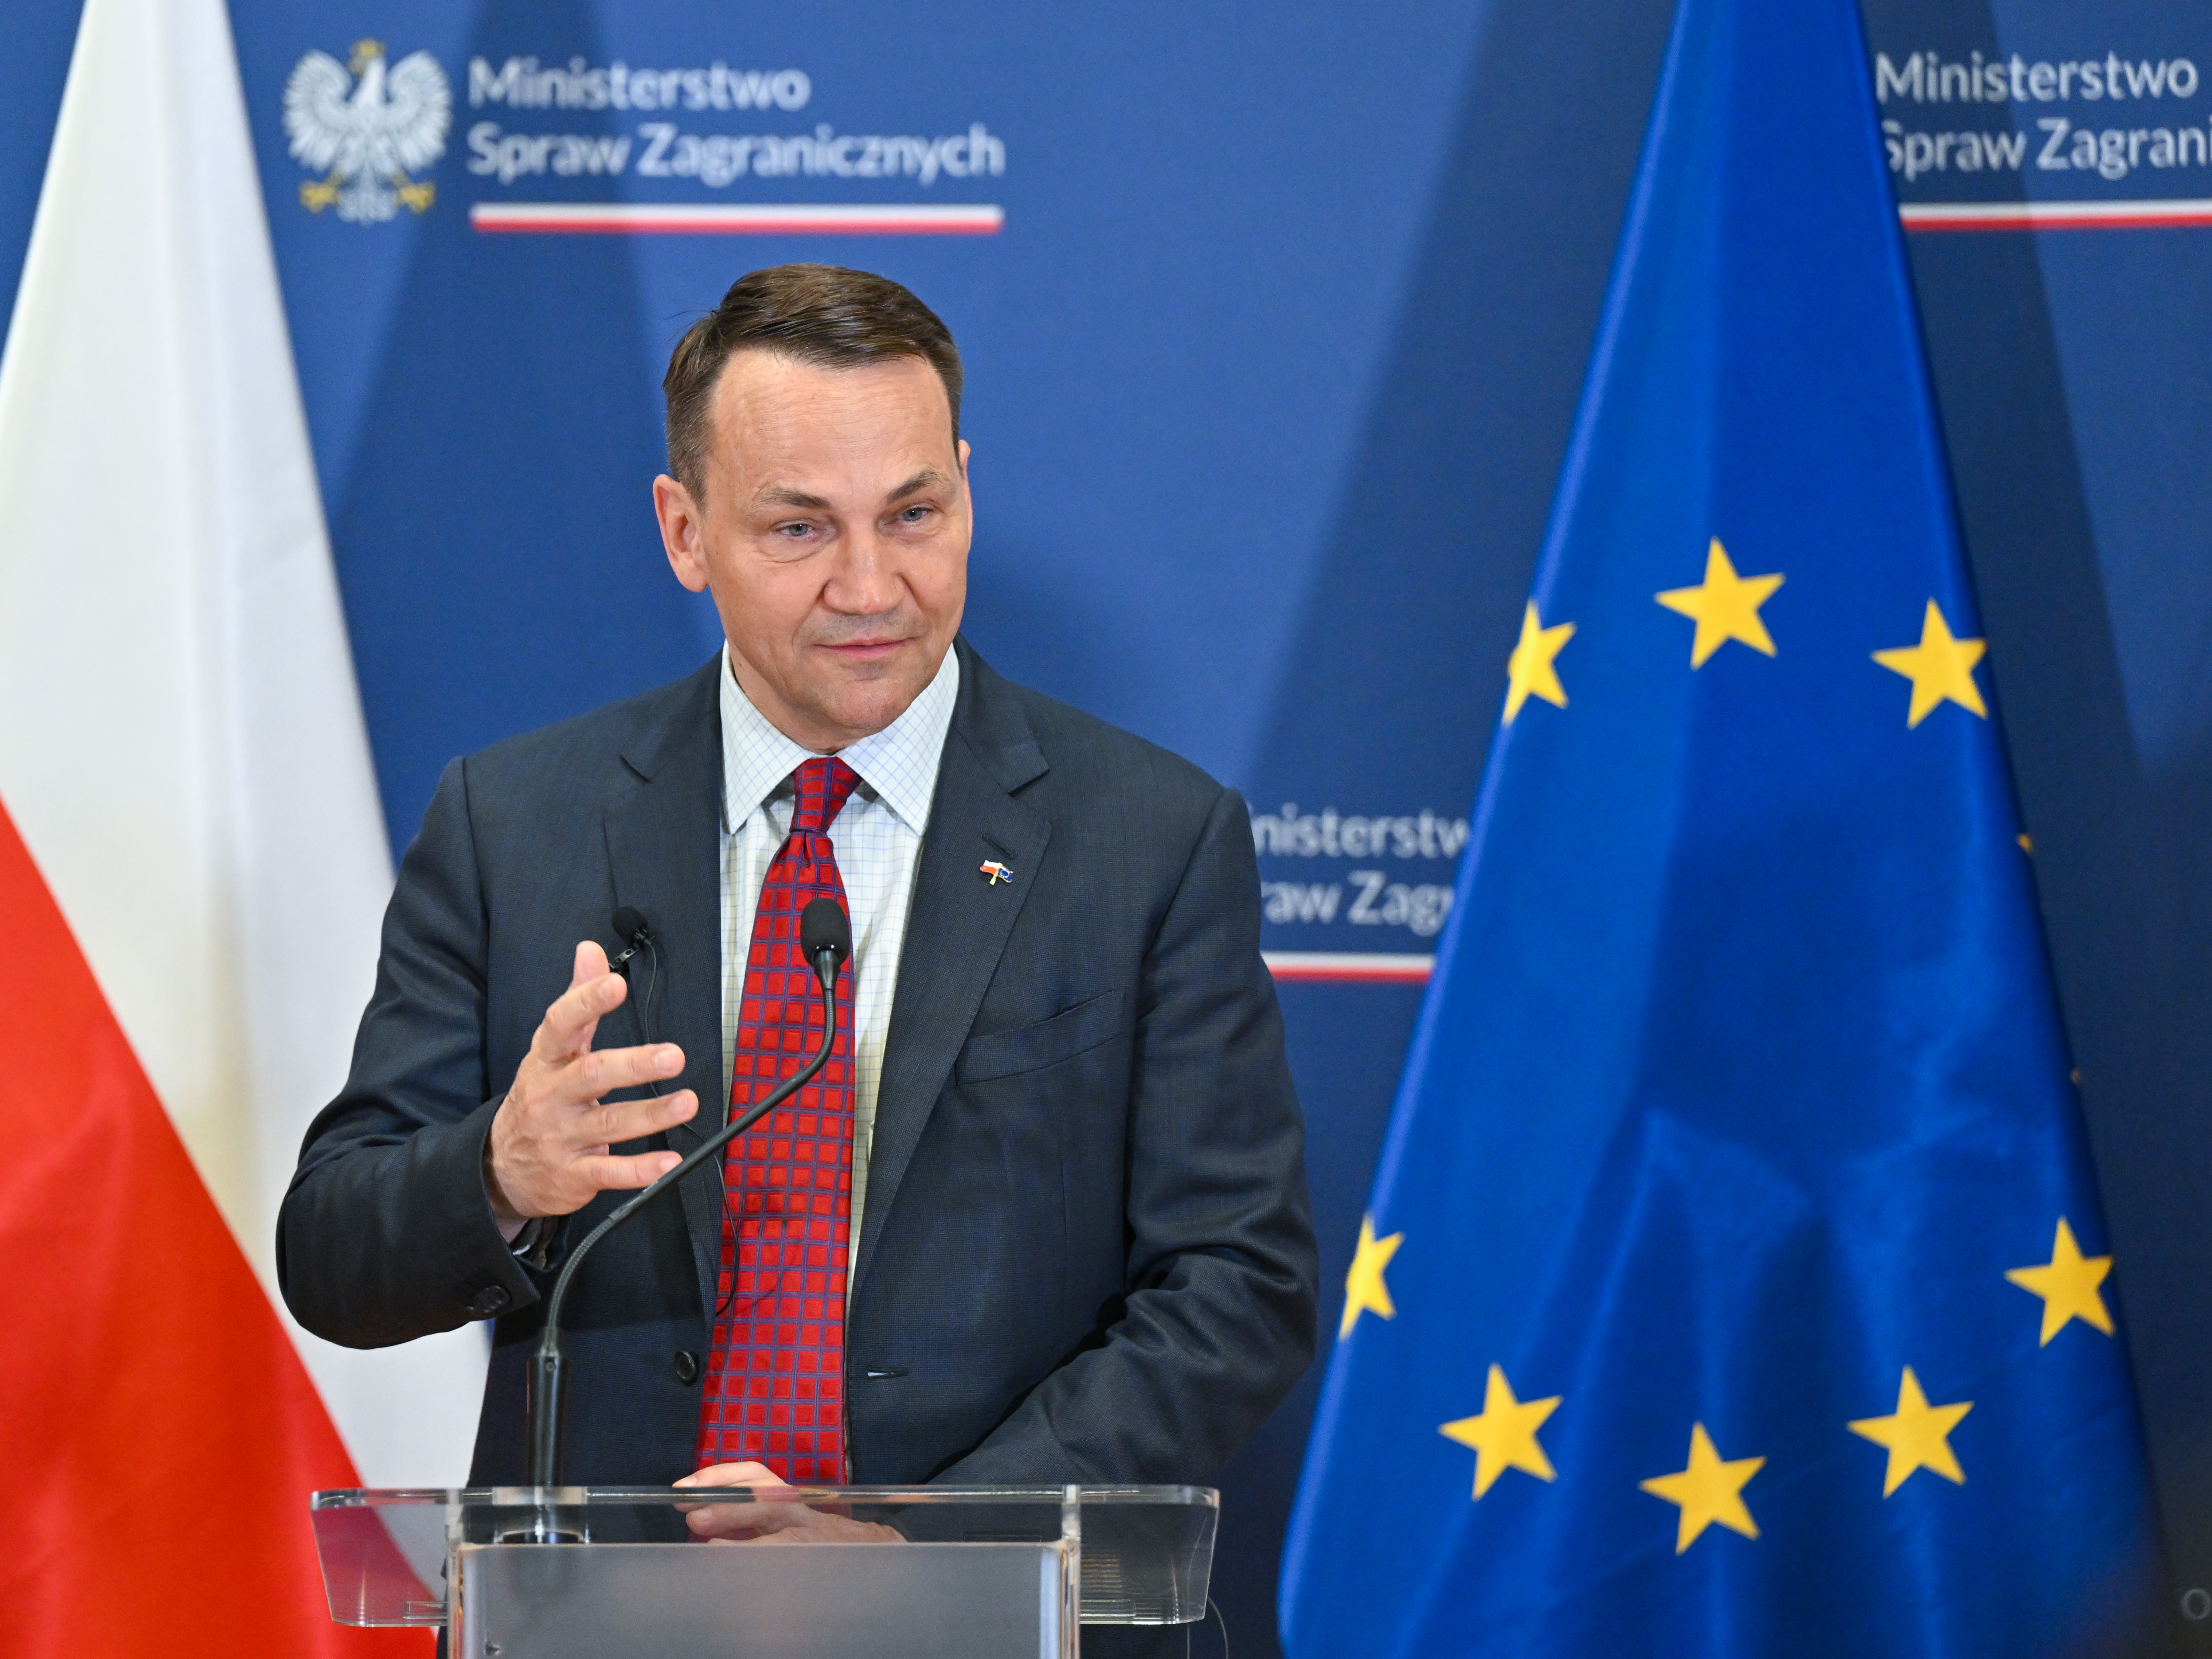 Polski minister: kraj chce jak najlepszych stosunków ze Stanami Zjednoczonymi